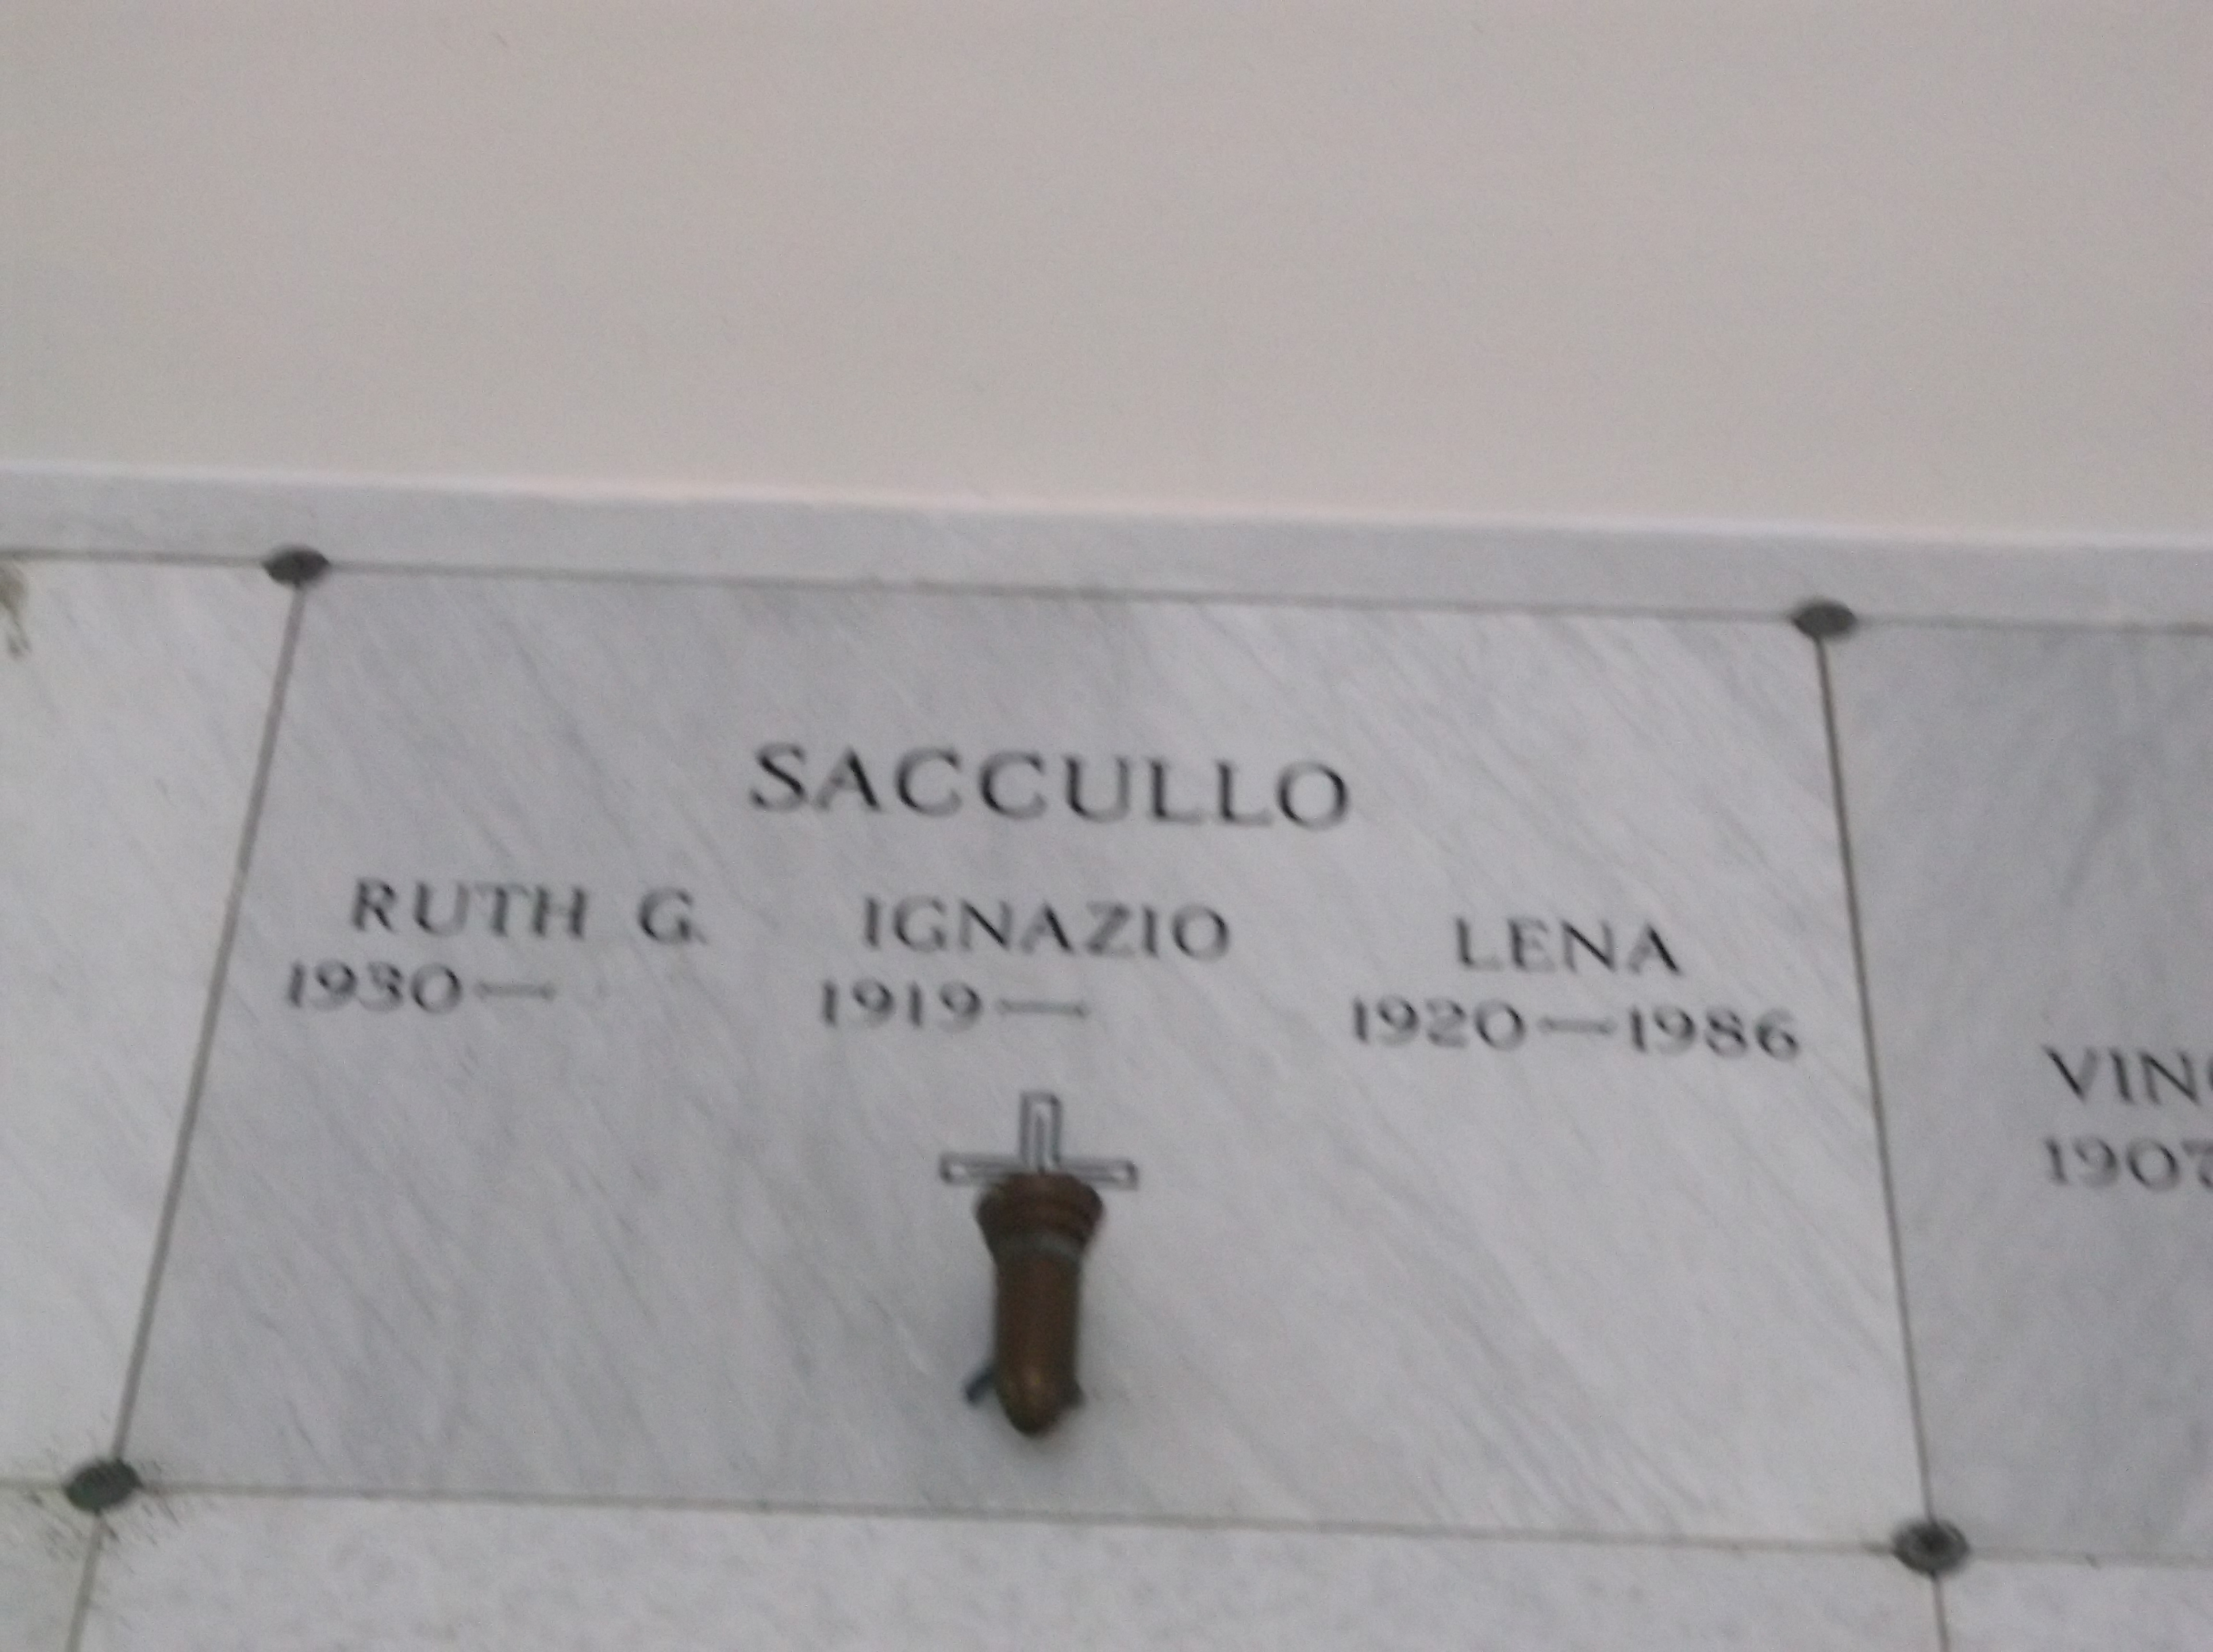 Ruth G Saccullo